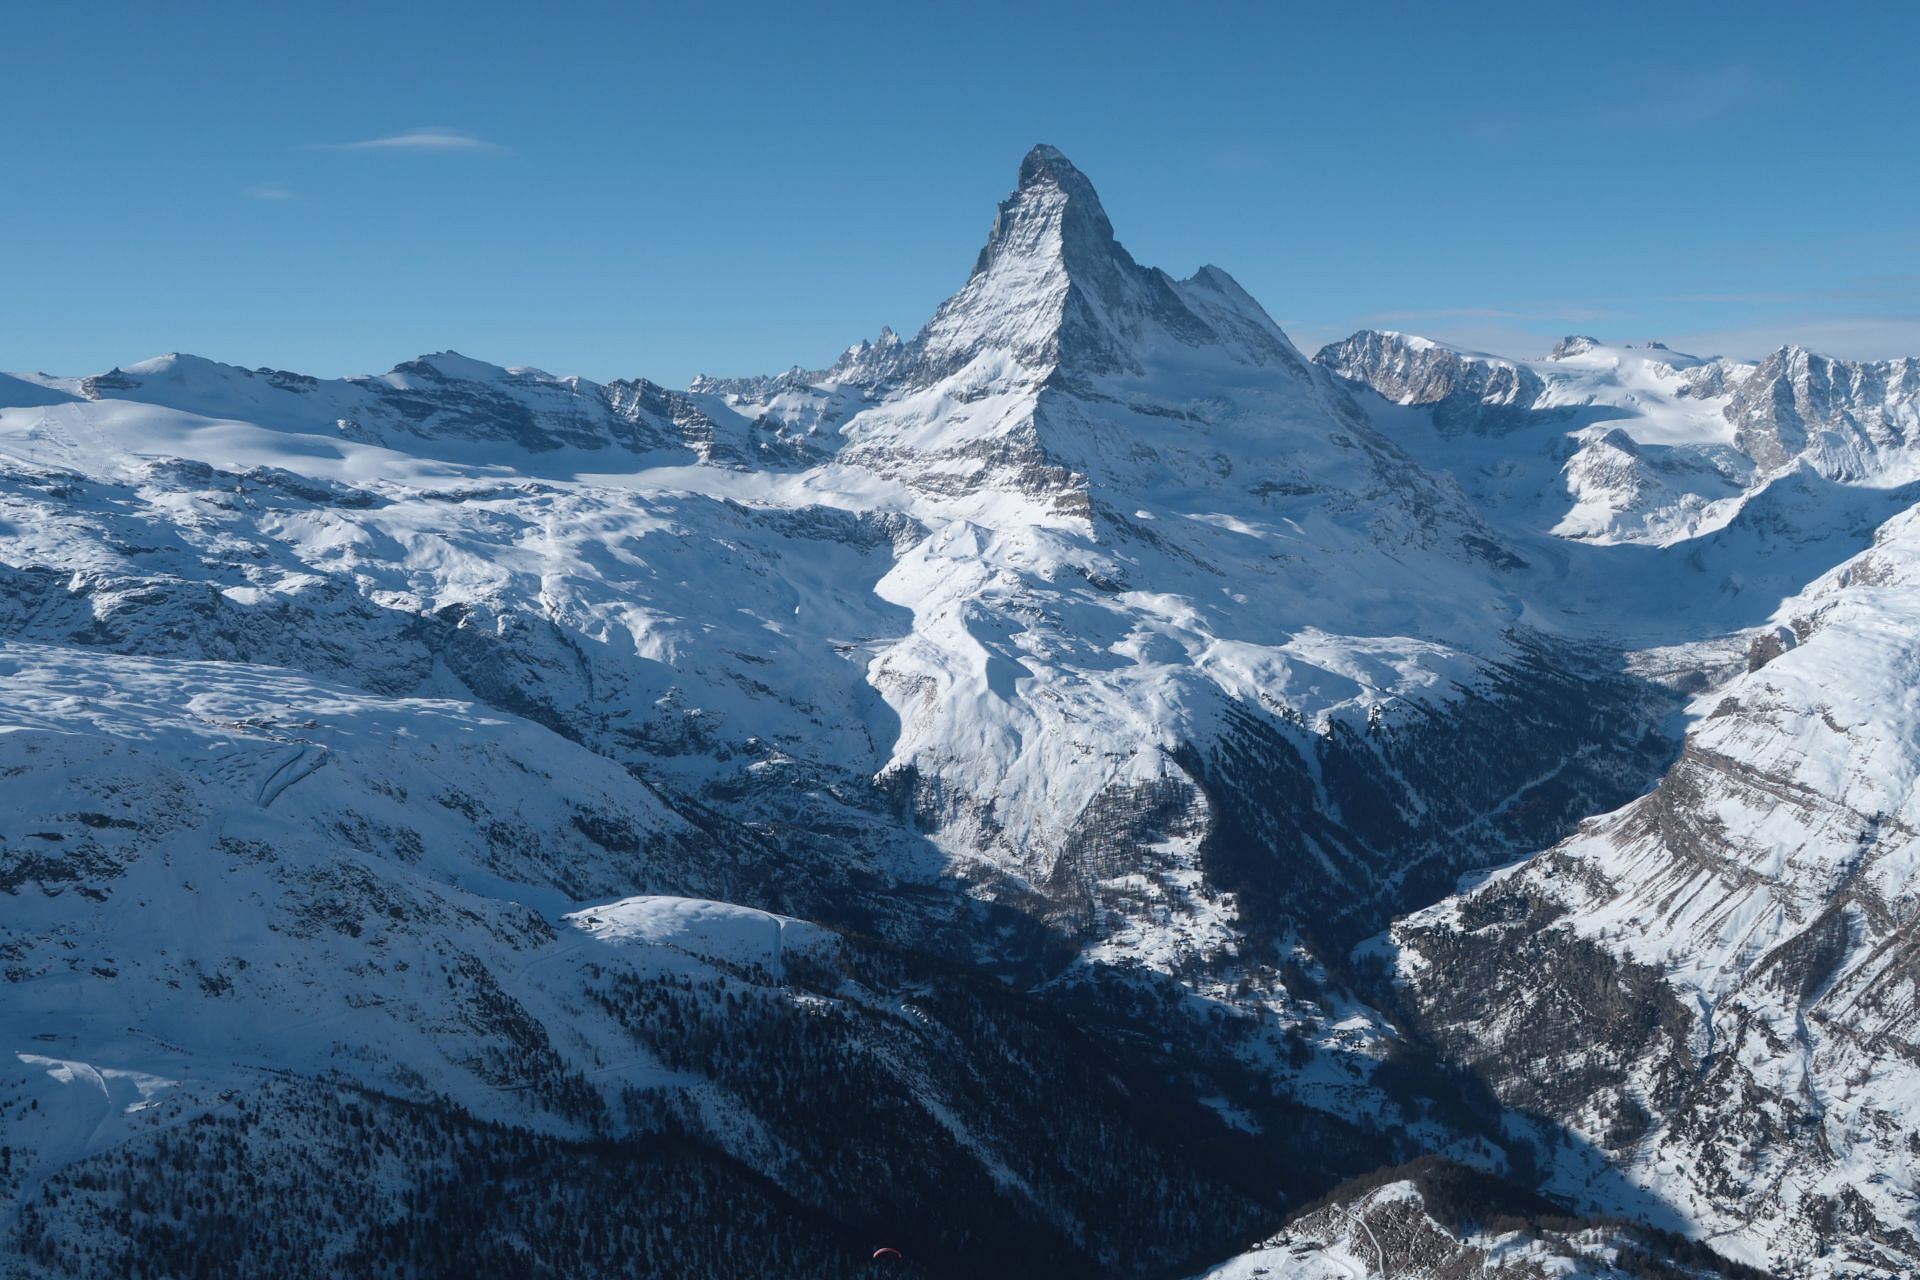 Matterhorn Mountain